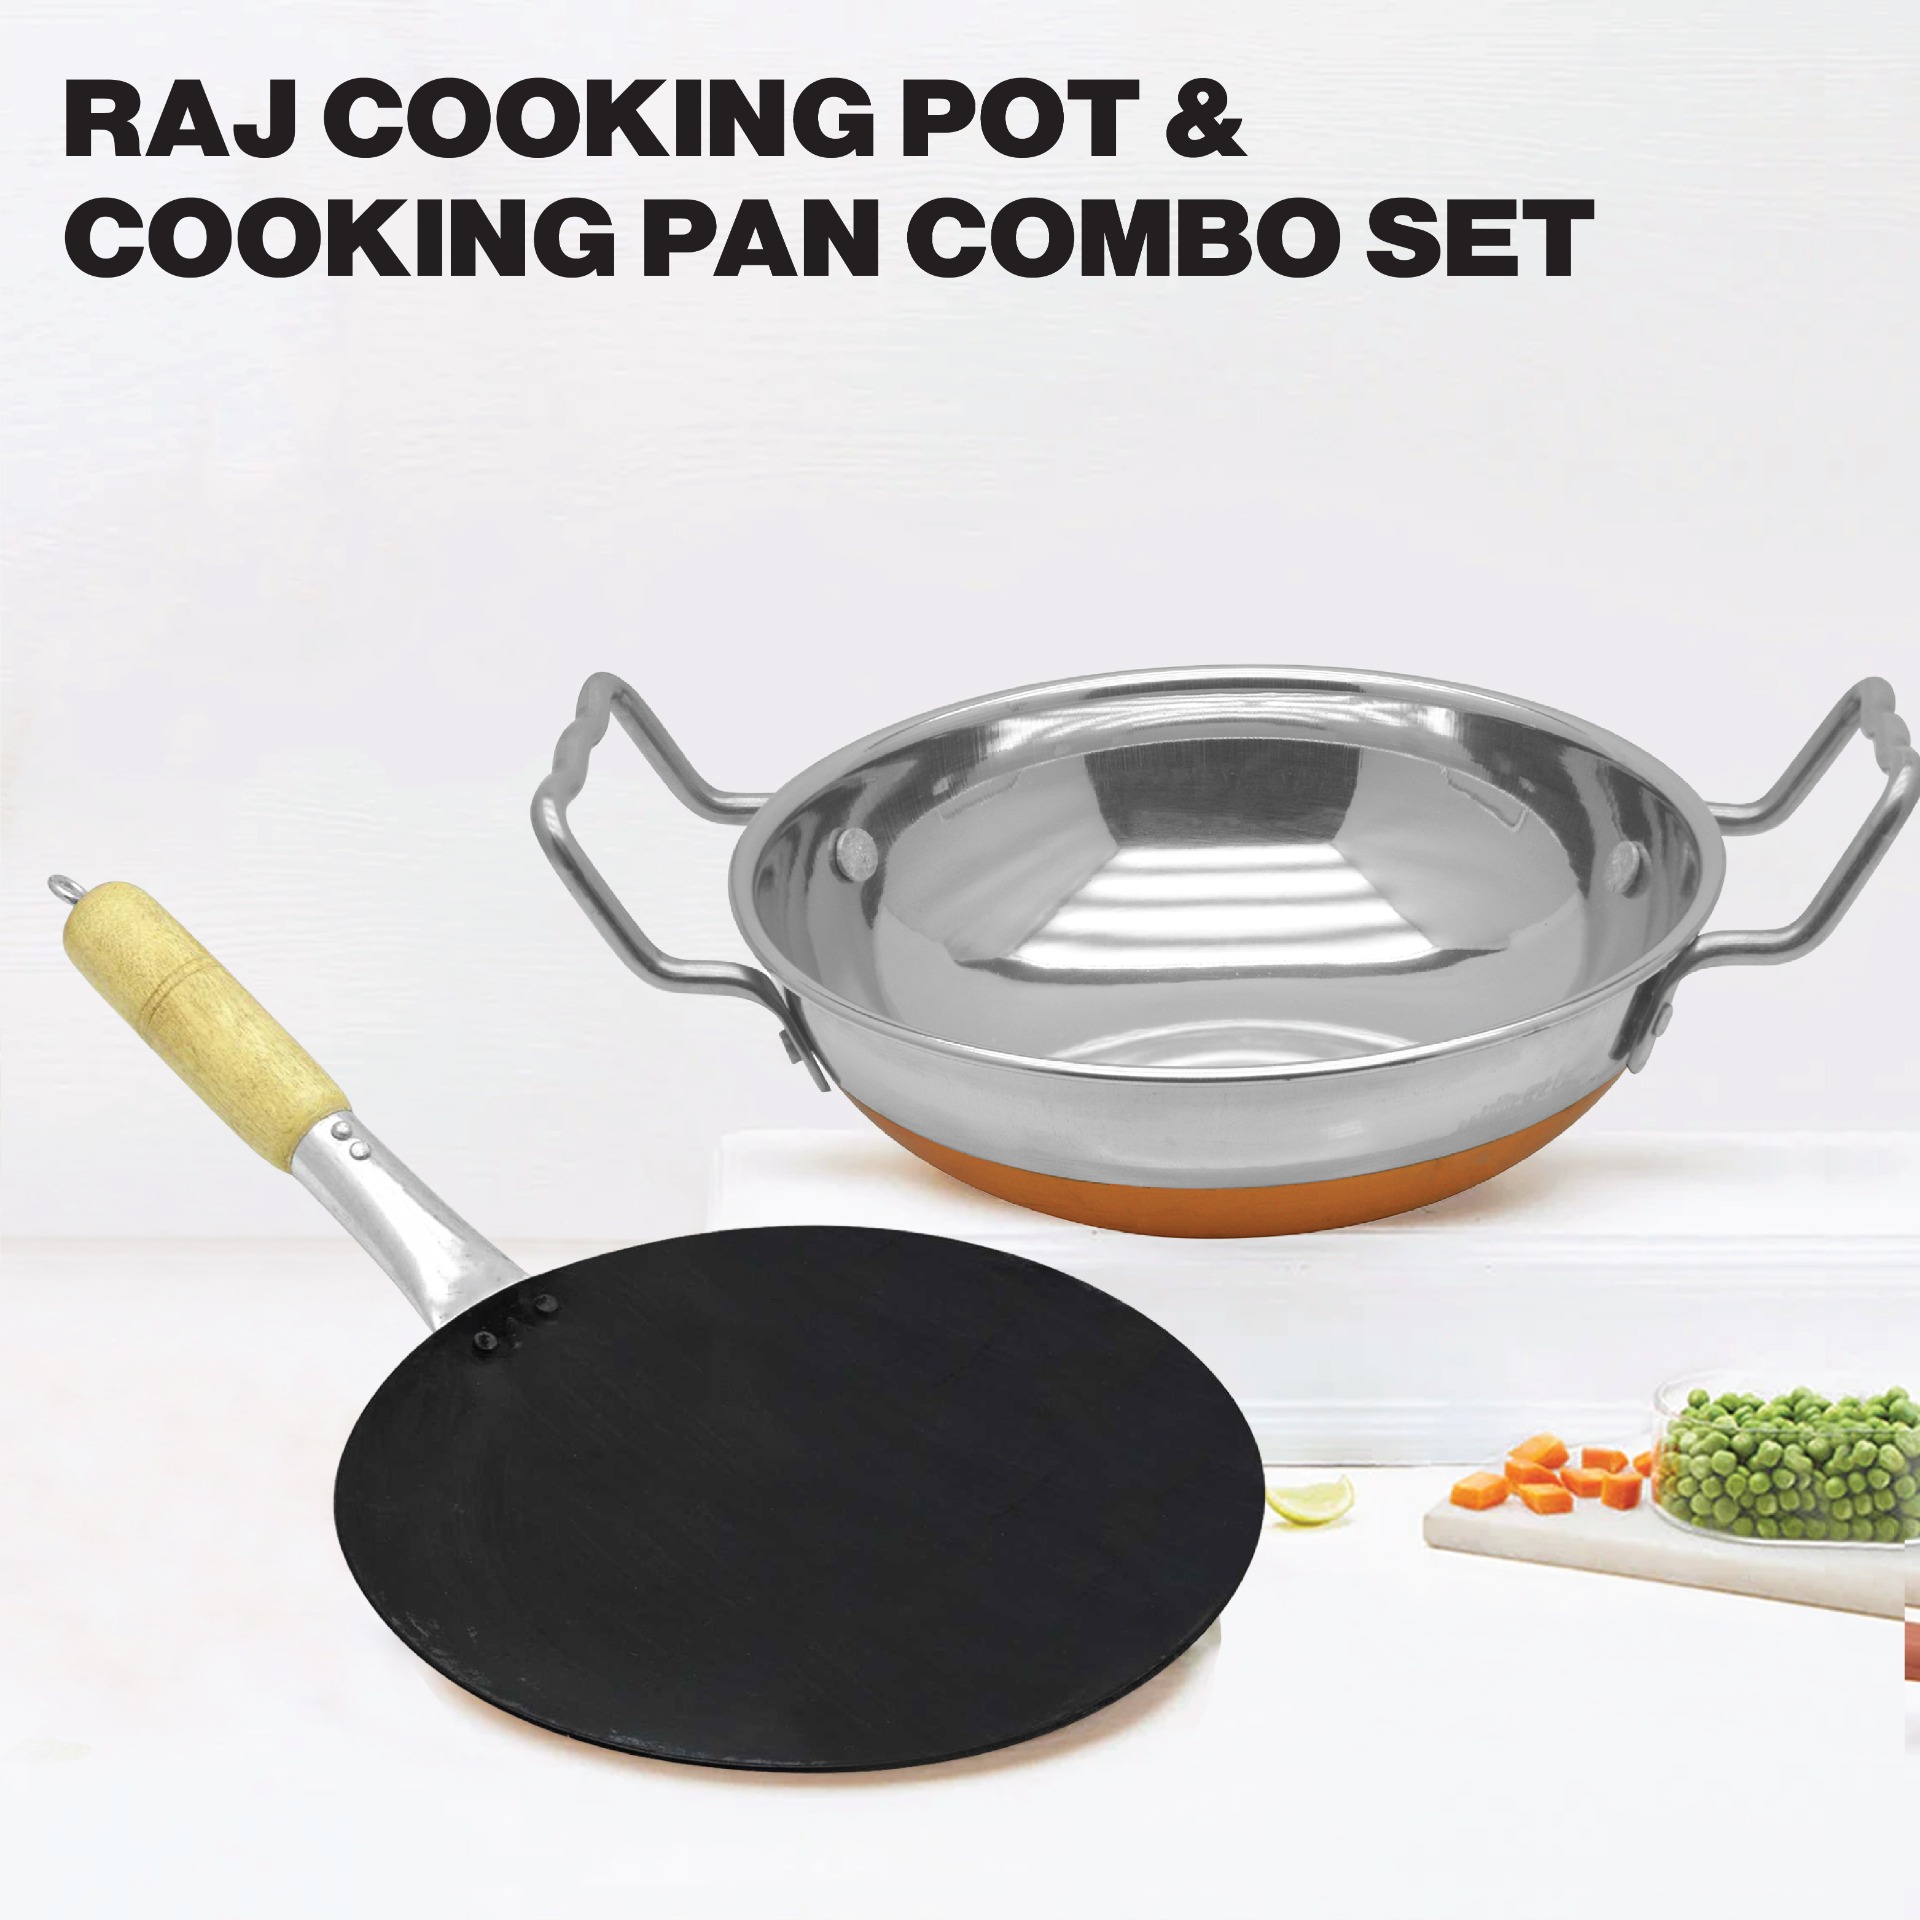 Raj Cooking Pot and Cooking Pan Combo Set